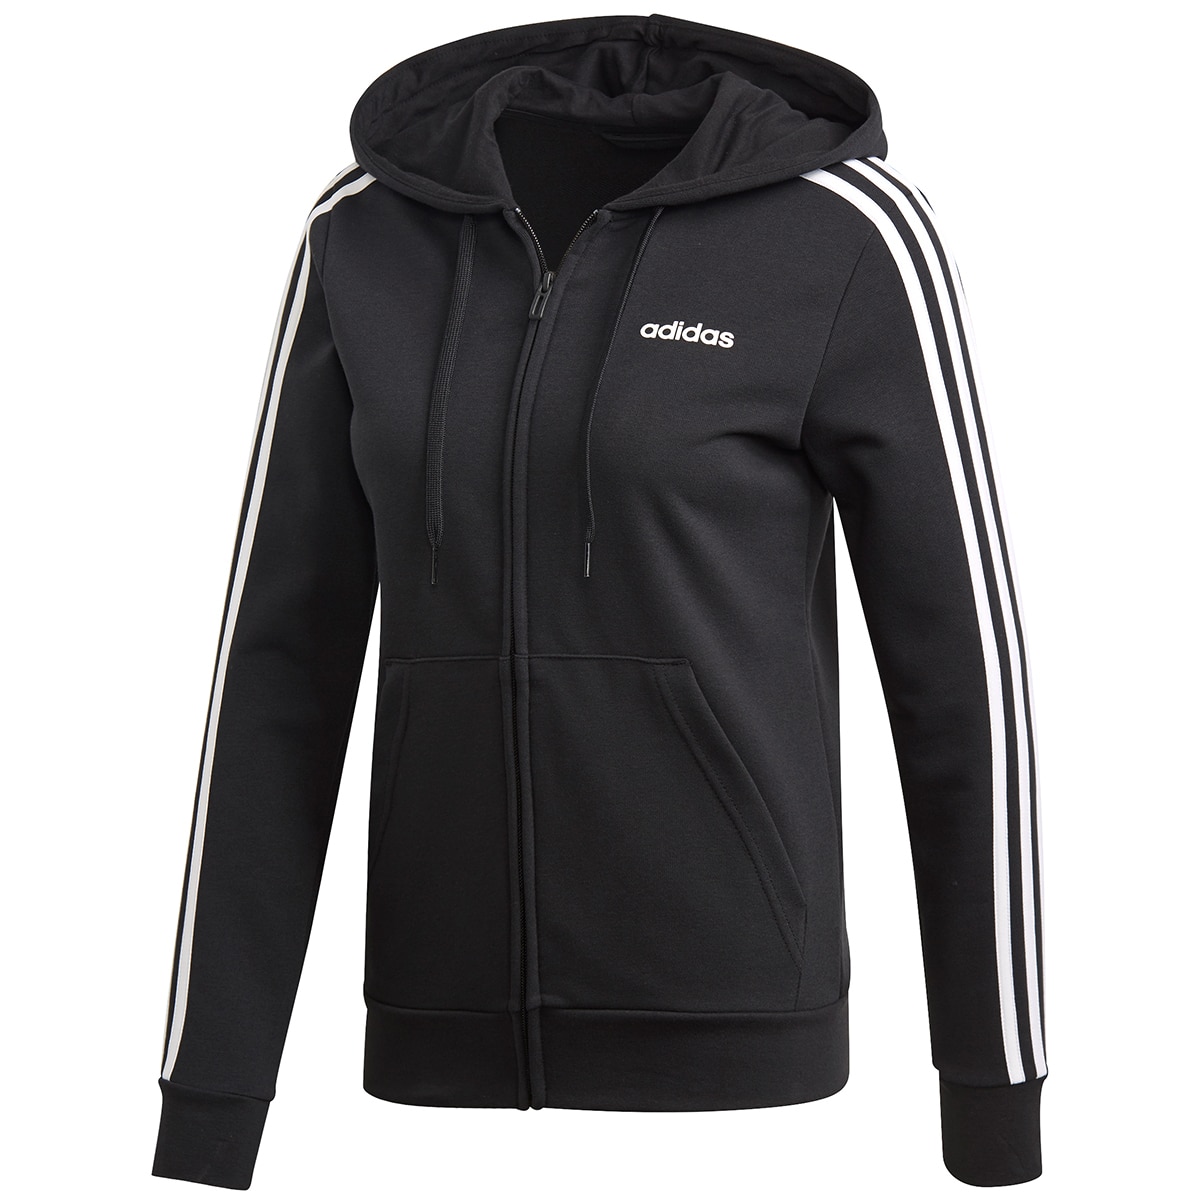 Adidas Women's 3D Full Zip Hooded Jacket Black & White